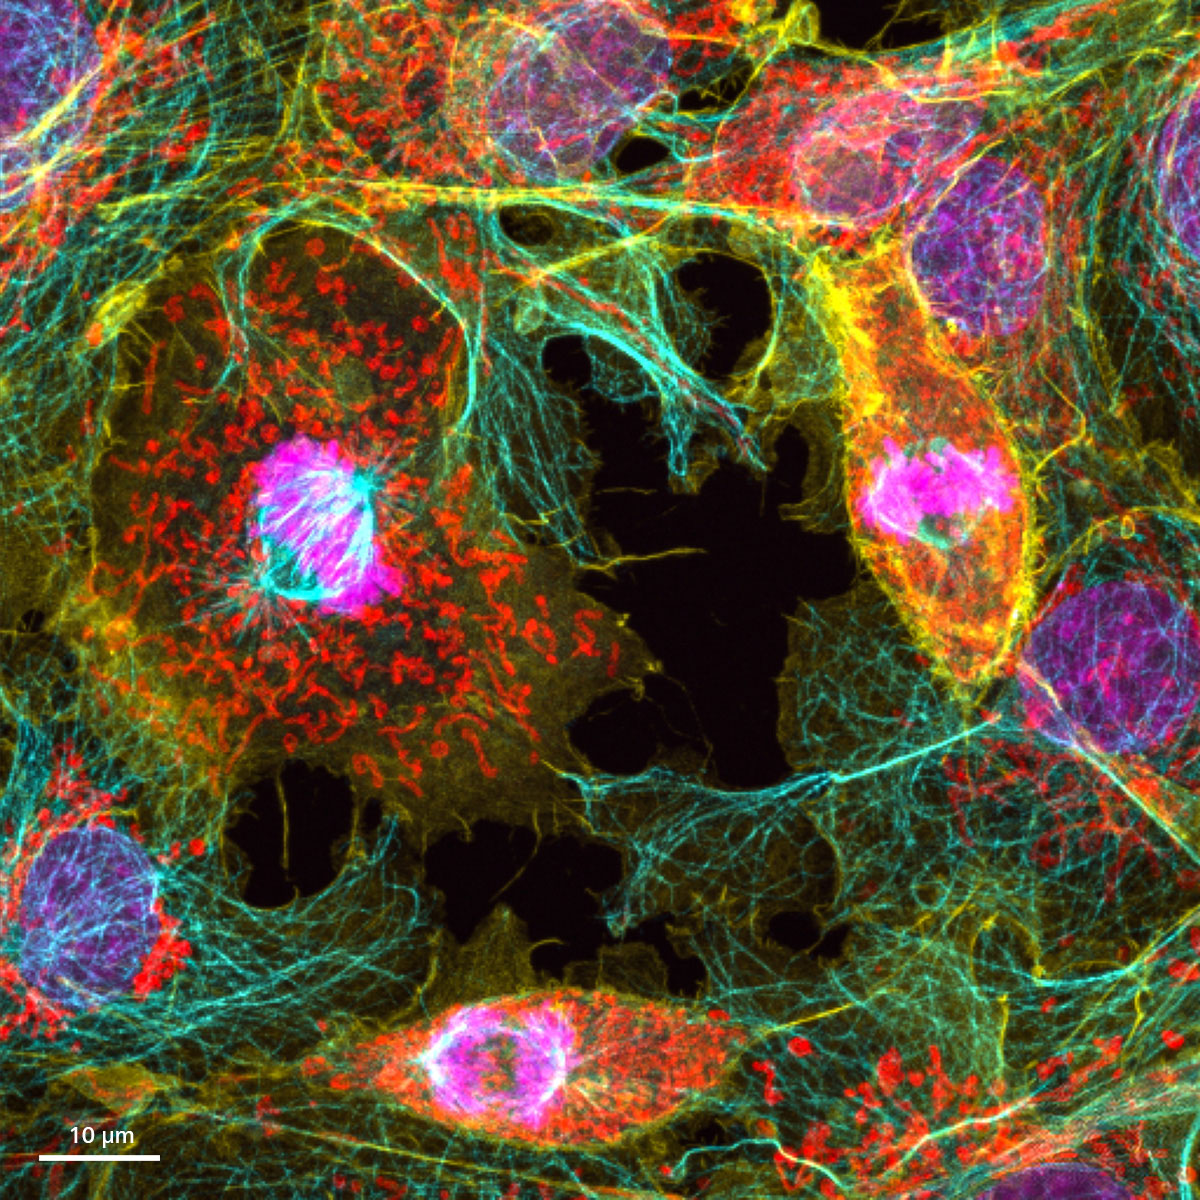 Células COS-7 (magenta), antitubulina Alexa 568 (azul), actina faloidina-OG488 (amarillo) y Tom20-Alexa 750 (rojo). Muestra cortesía de Urs Ziegler y Jana Doehner, Universidad de Zúrich, ZMB, Suiza.